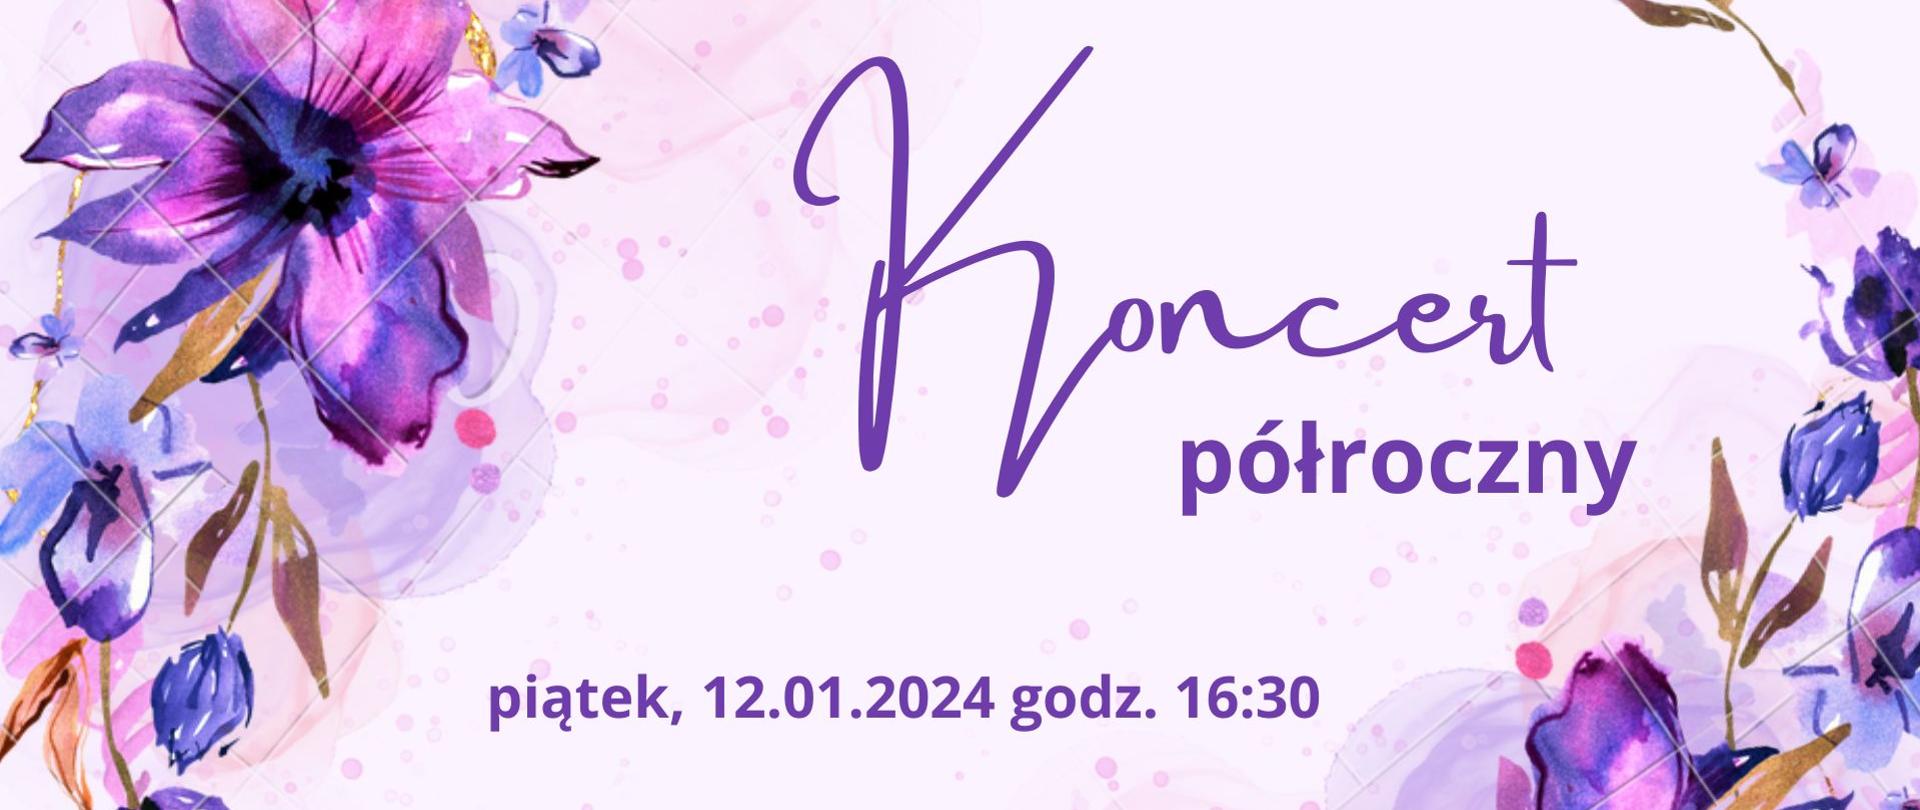 Plakat z fioletowymi kwiatami z napisem "Koncert półroczny, piątek 12.01.2024 godz. 16:30"